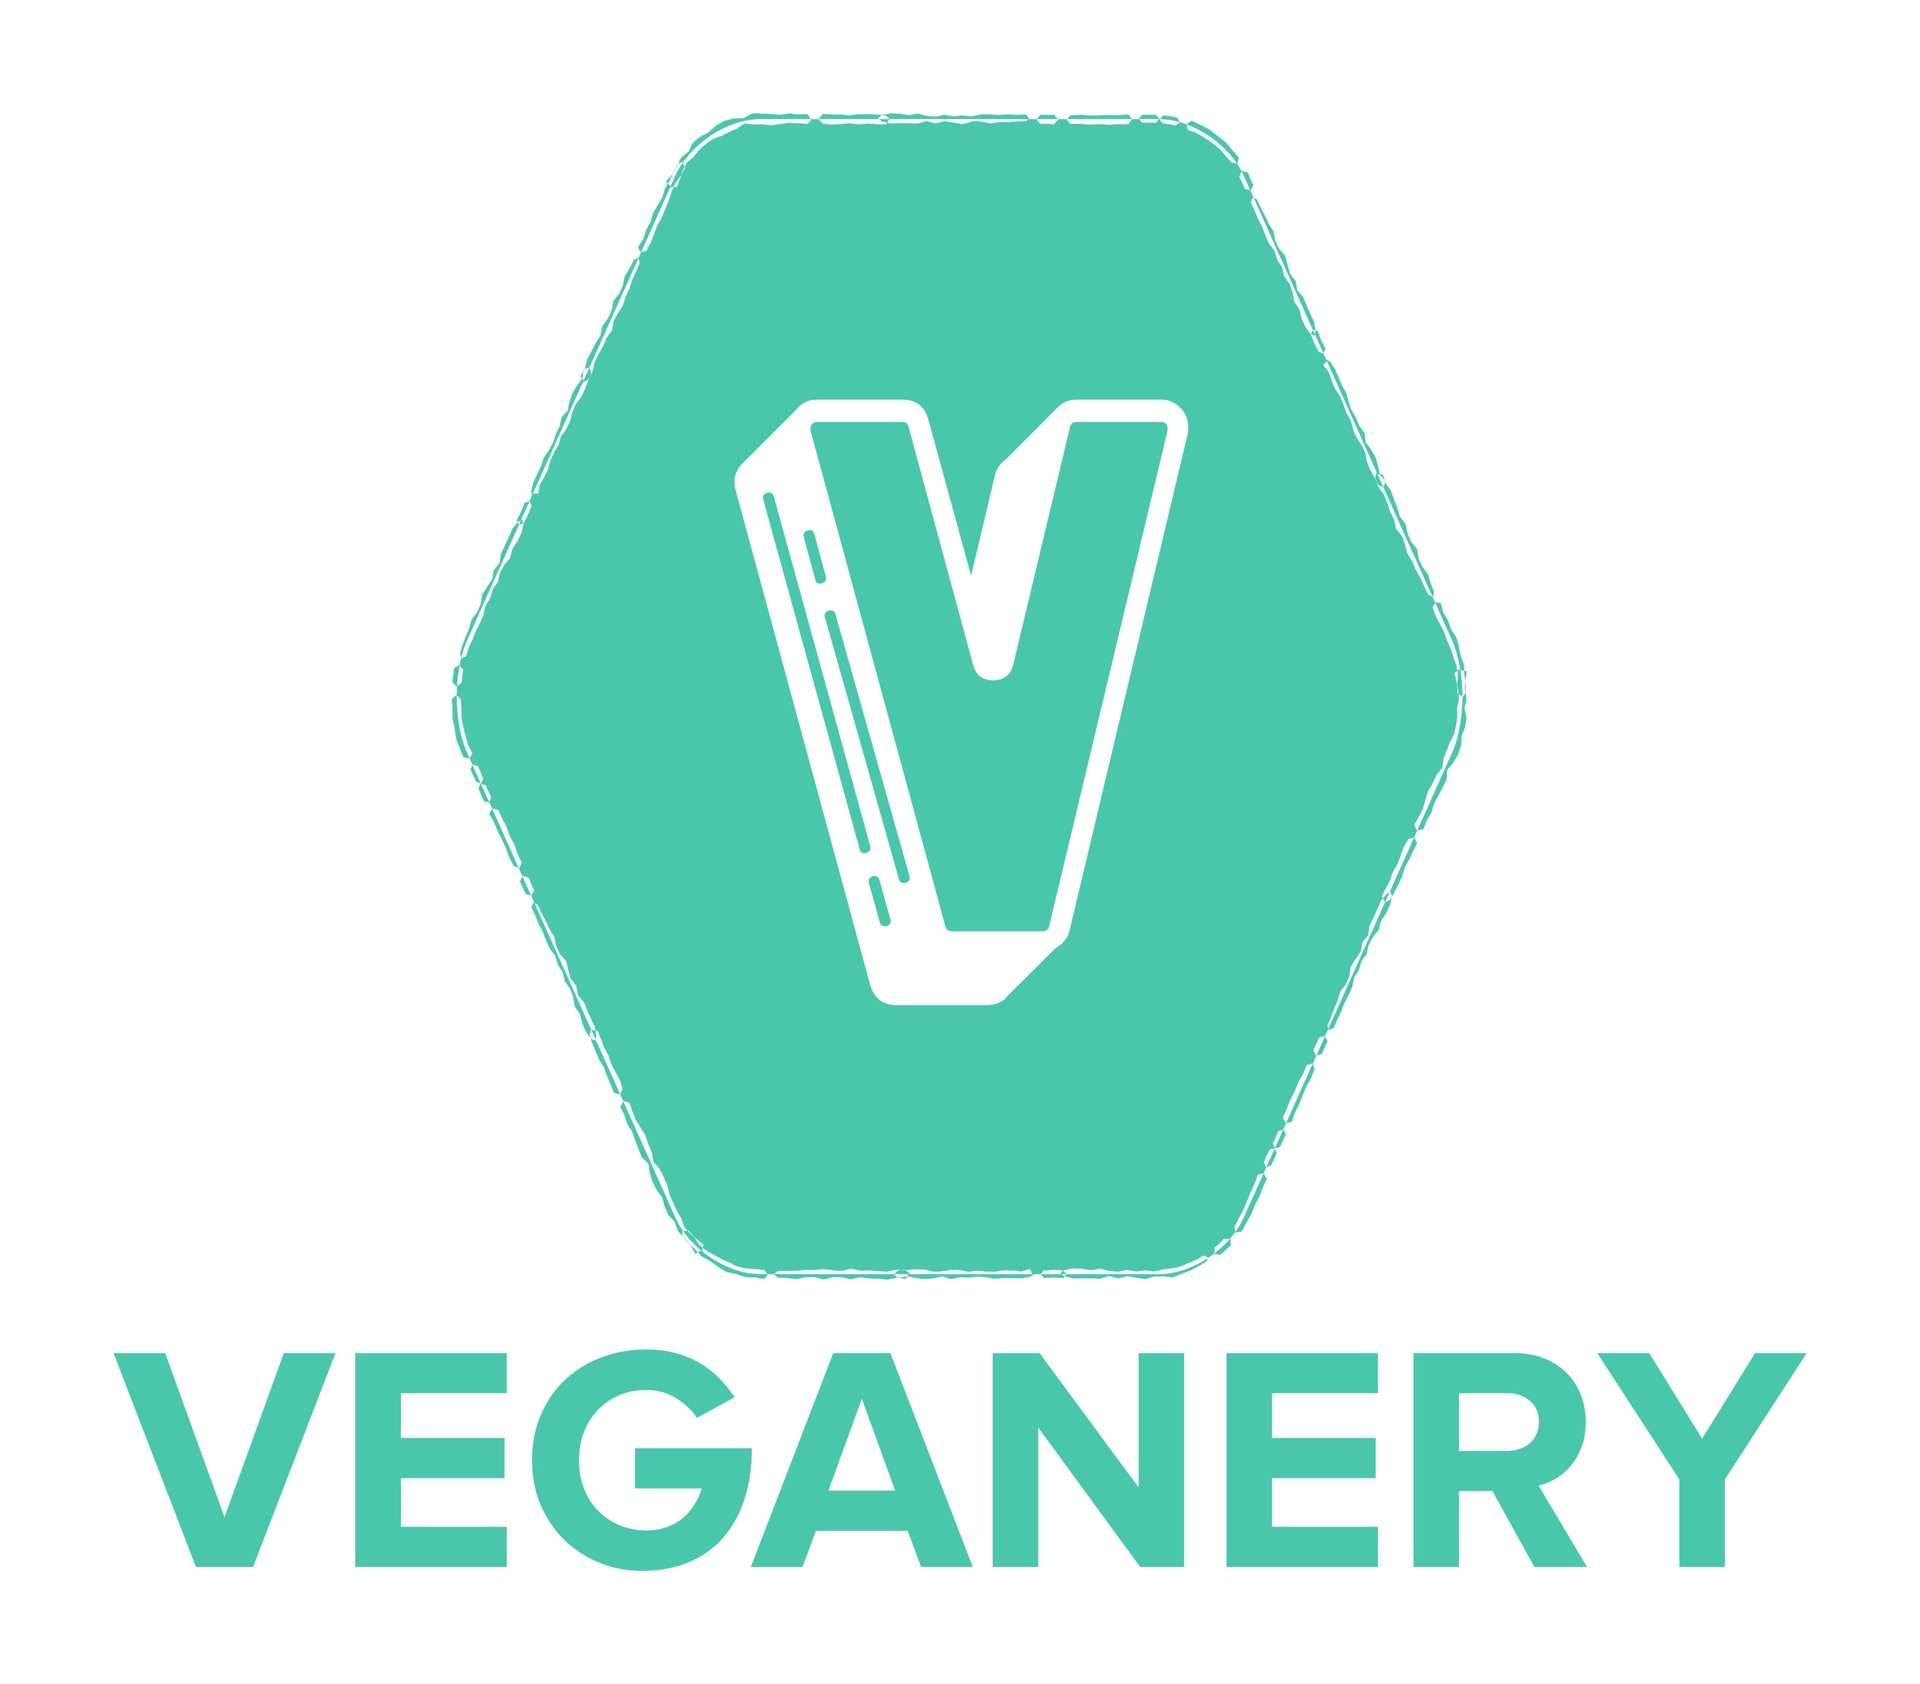 Veganery